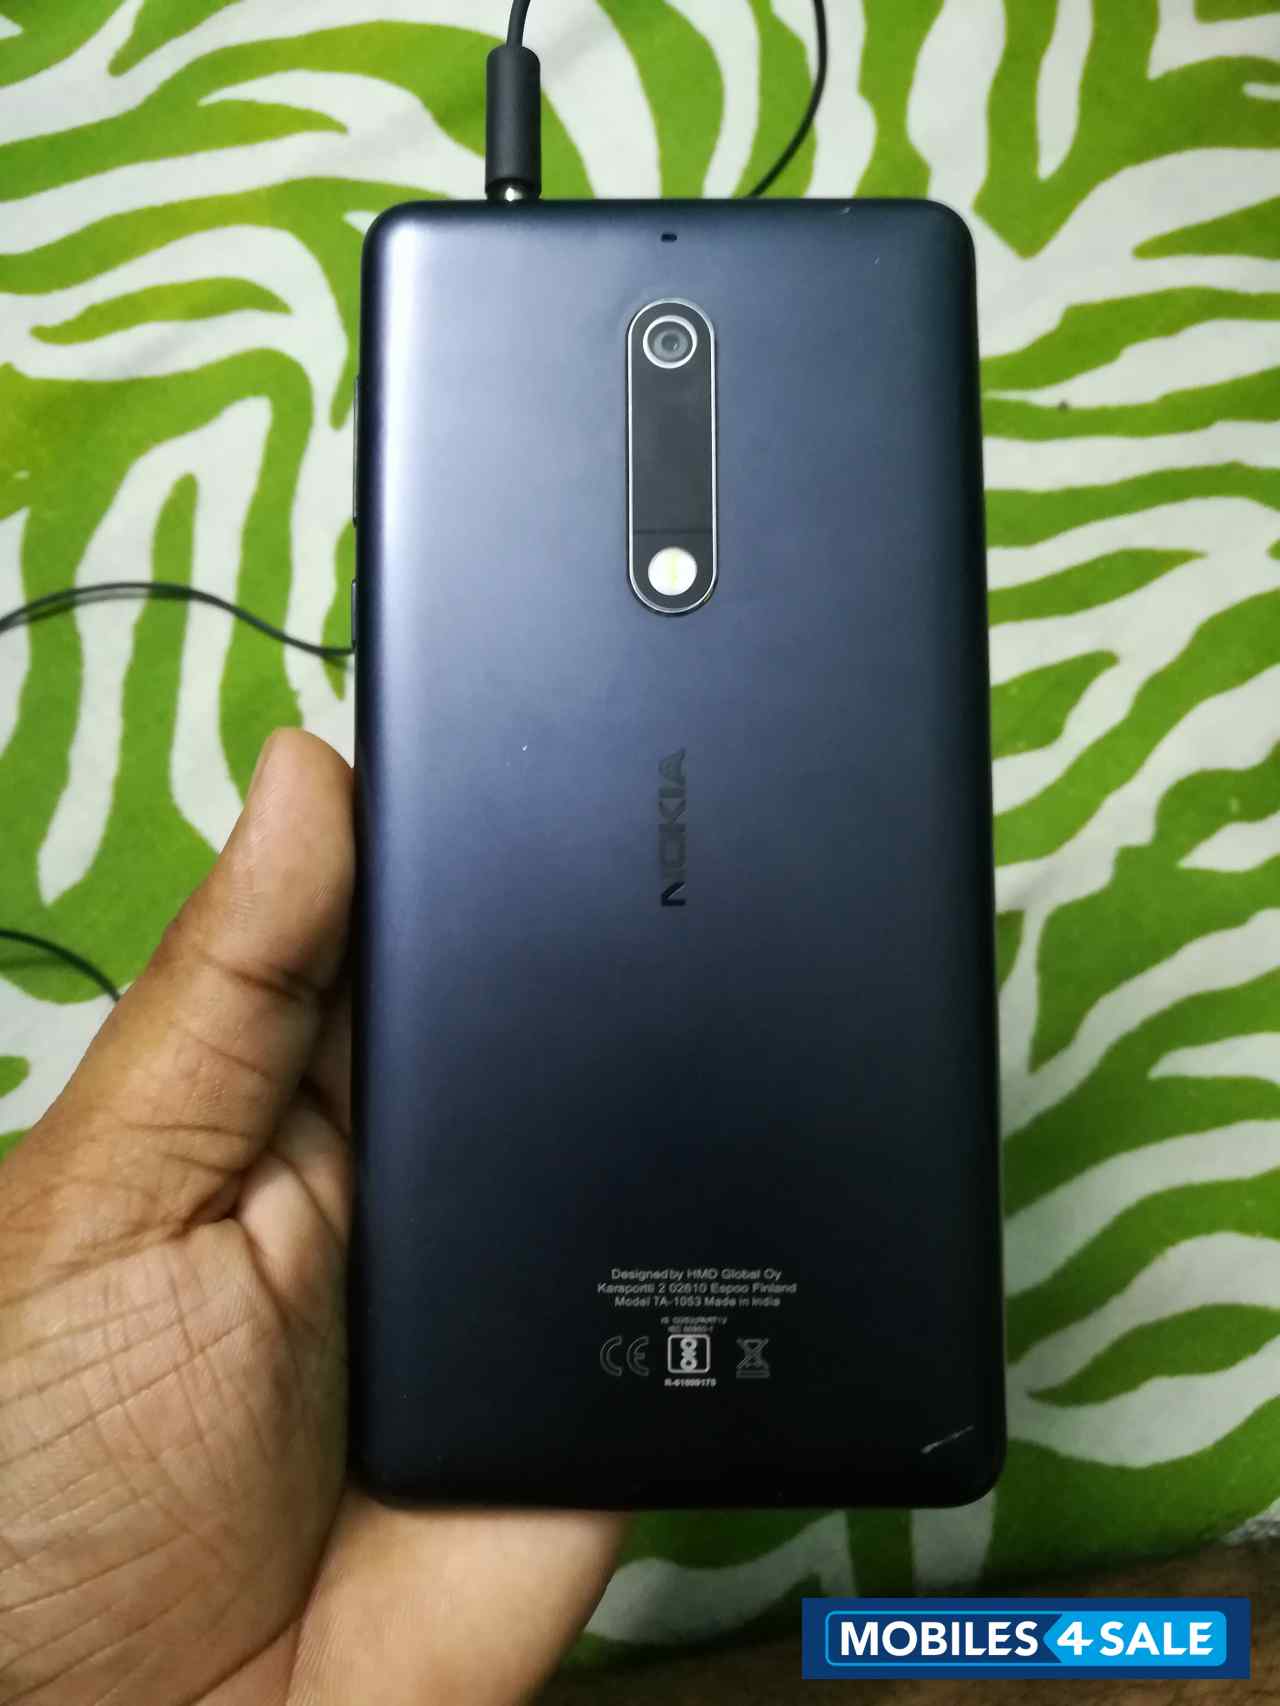 Black Nokia  5